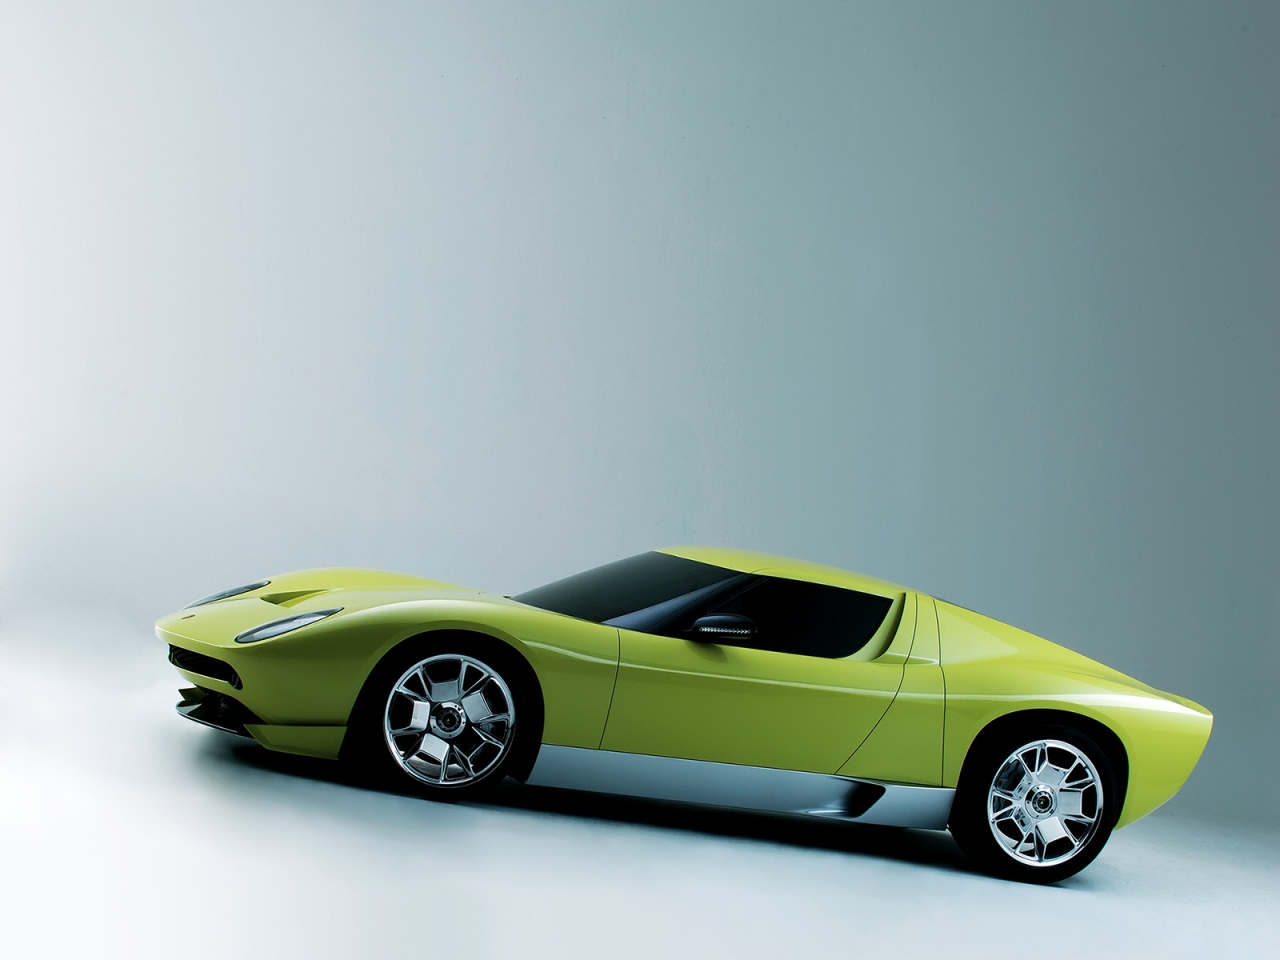 Lamborghini Miura Concept Side for 1280 x 960 resolution